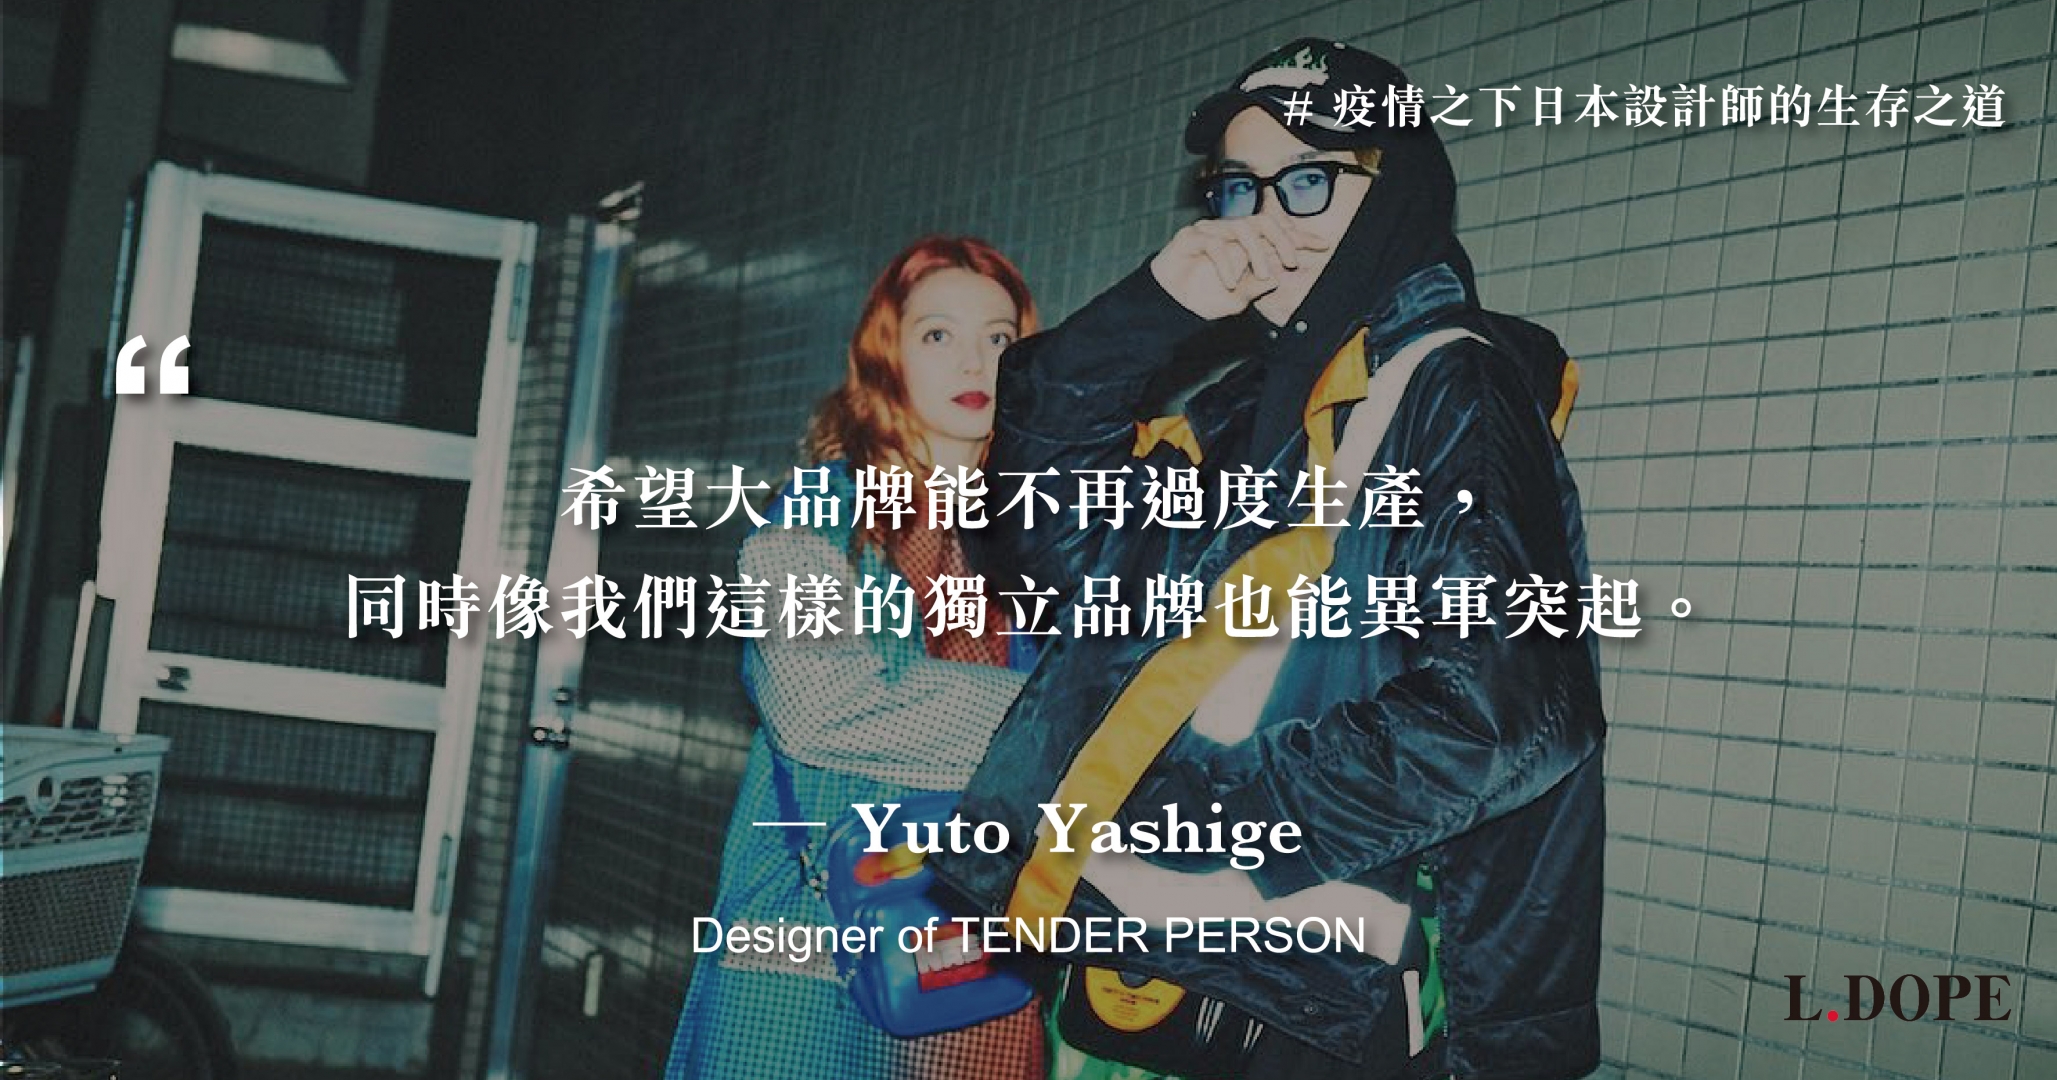 # 或許這是異軍突起的機會：專訪 TENDER PERSON 設計師 Yuto Yashige